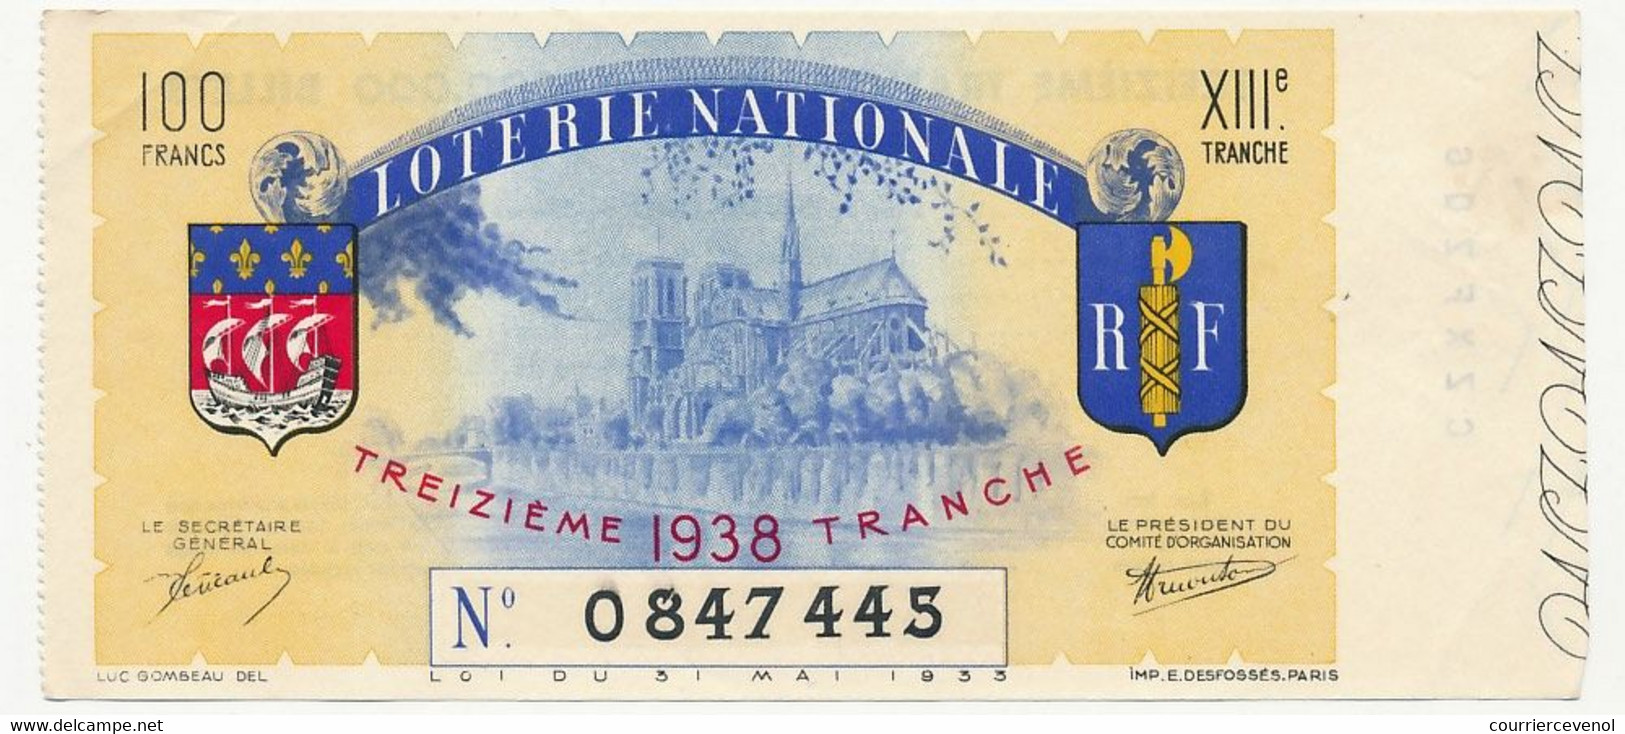 FRANCE - Loterie Nationale - Billet Entier - Illustré Notre Dame De Paris - 13eme Tranche 1938 - Billets De Loterie